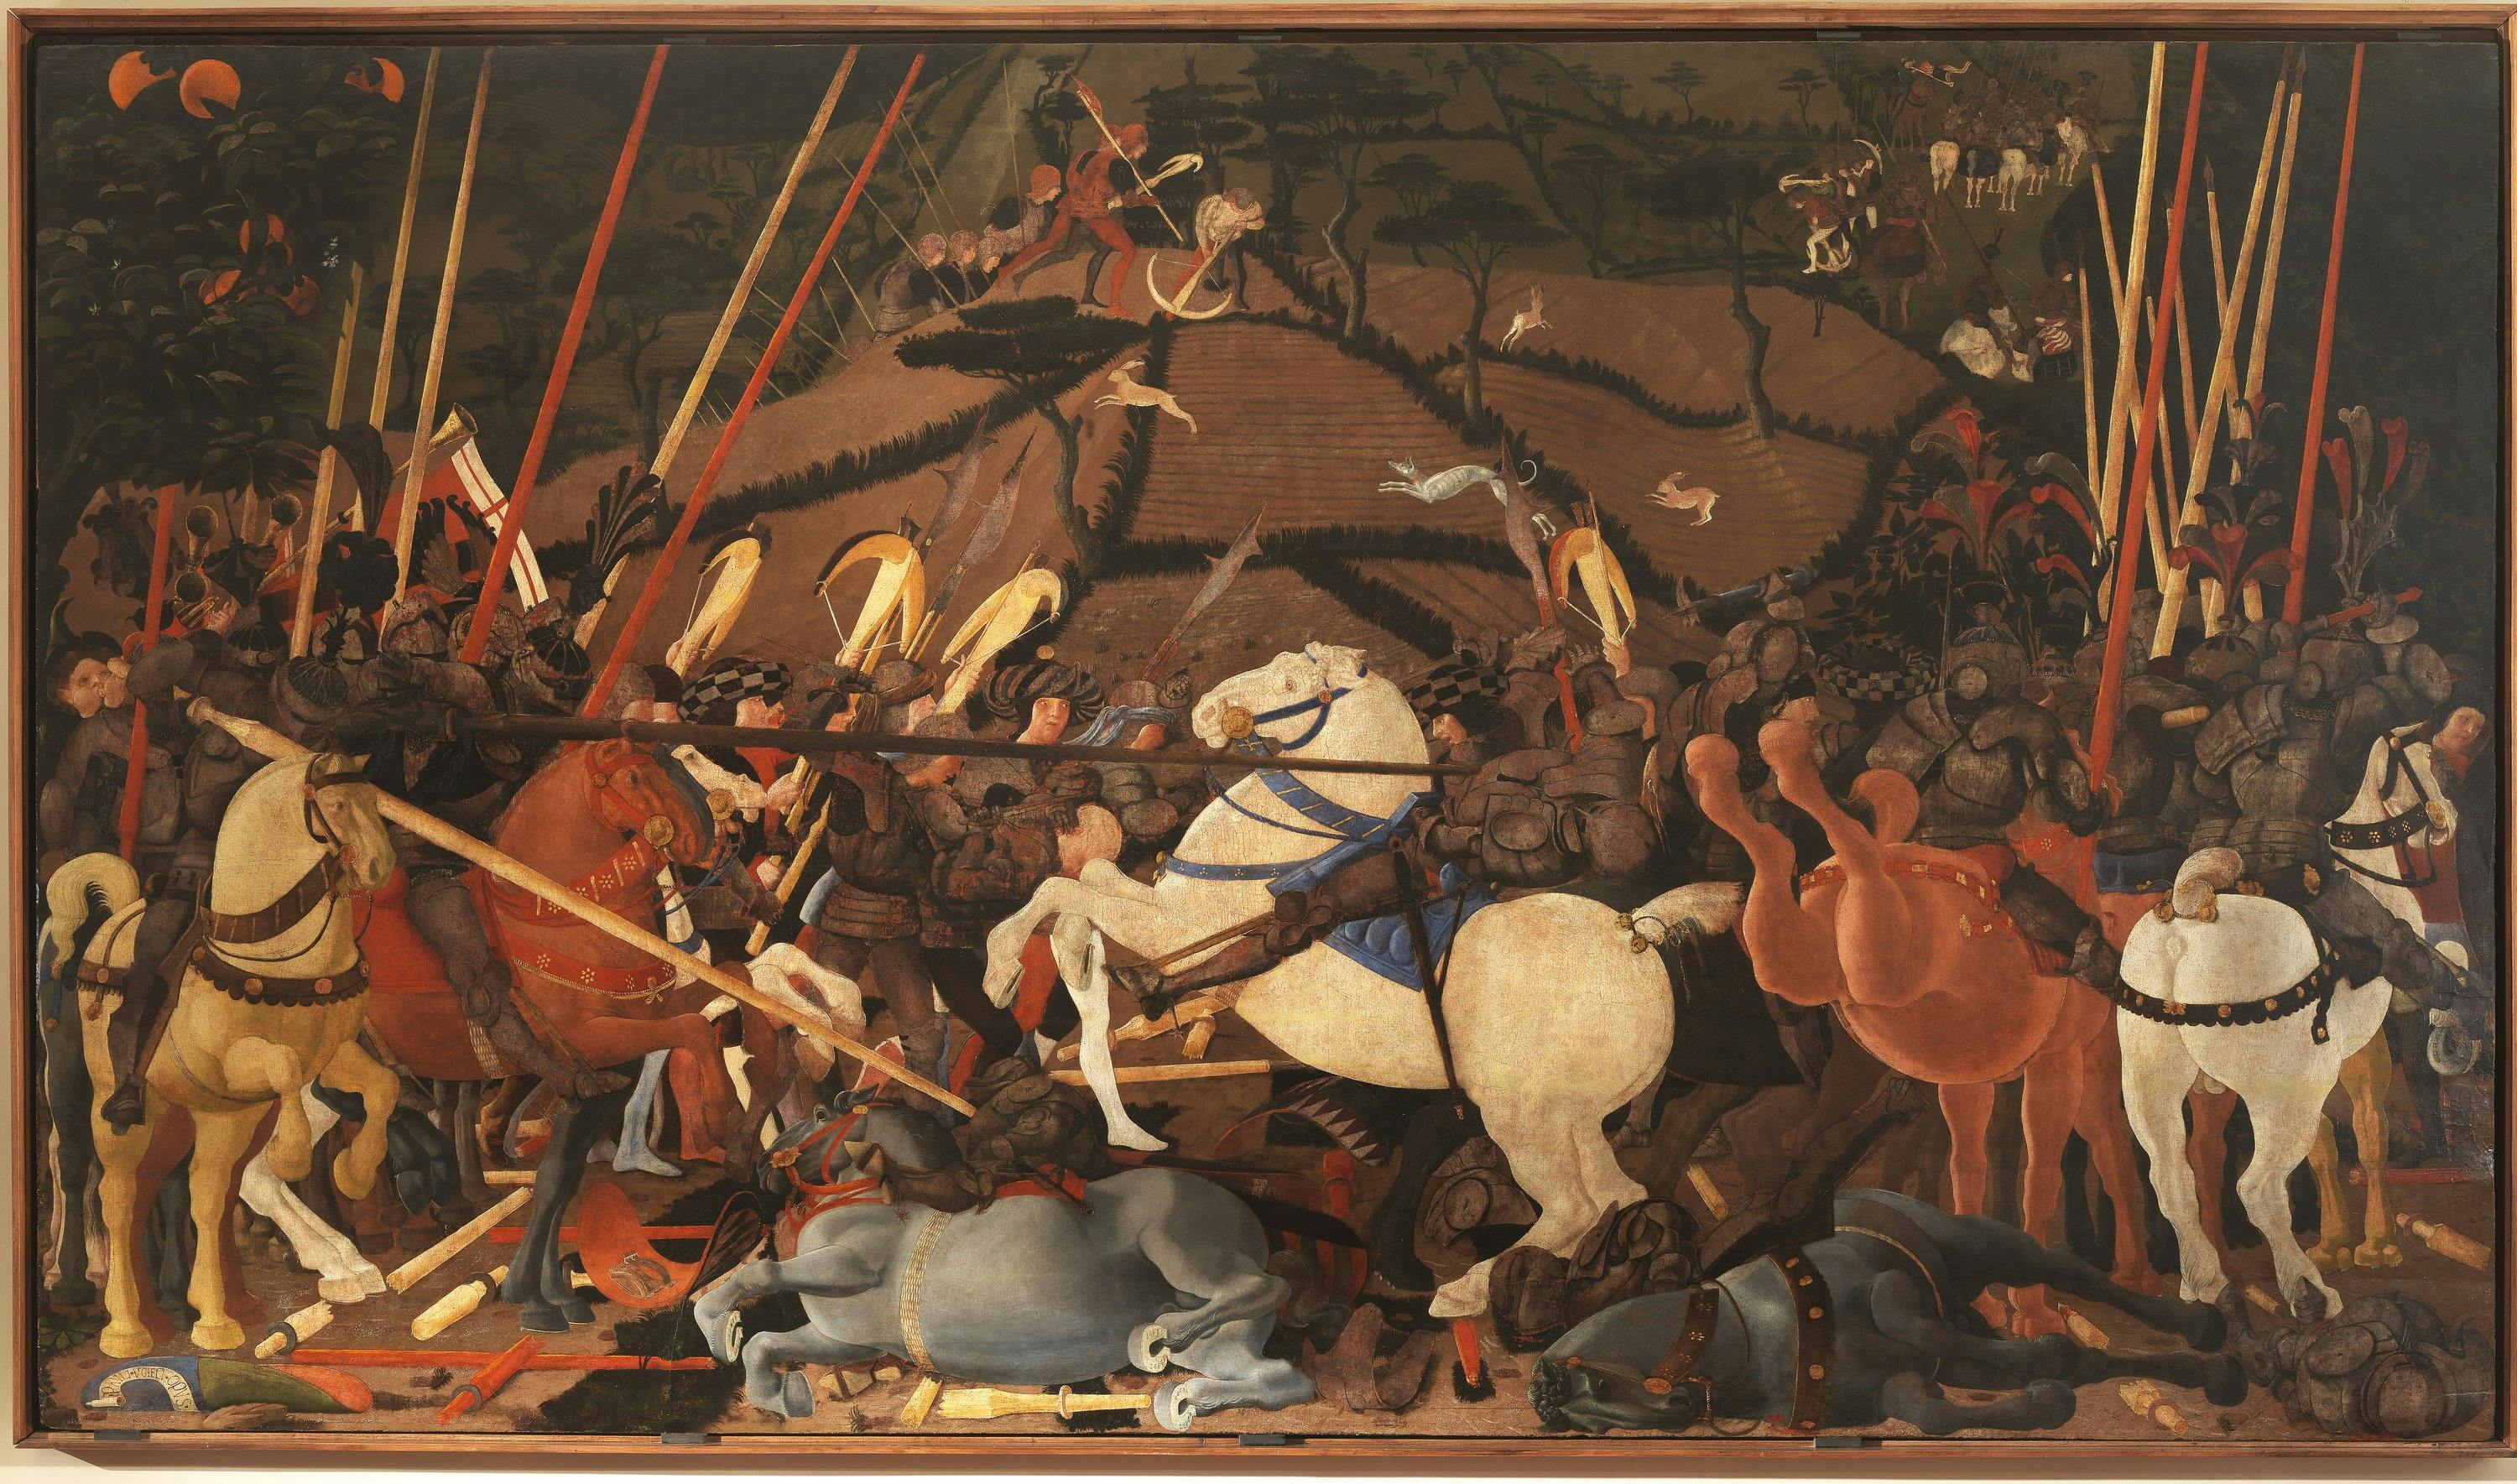 Battaglia di San Romano